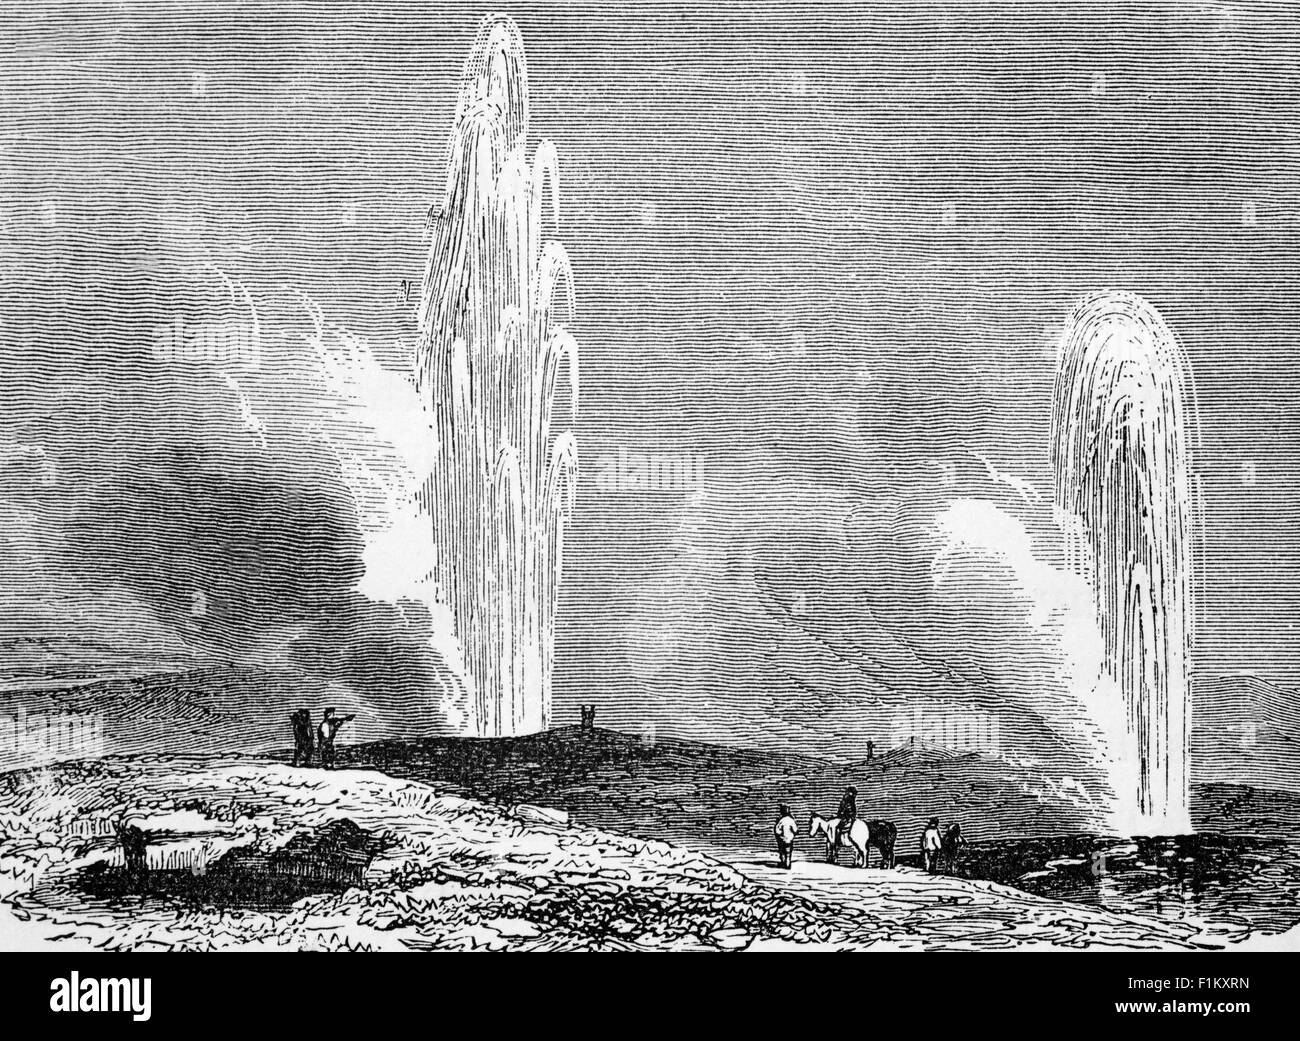 Illustration du Grand Geysir au XIXe siècle dans le sud-ouest de l'Islande. Il se trouve dans la vallée de Haukadalur sur les pentes de la colline de Laugarfjall et ses éruptions peuvent faire bouillir l'eau jusqu'à 70 mètres (230 pi) dans l'air. Cependant, les éruptions peuvent être rares et ont cessé dans le passé pendant des années à la fois. Banque D'Images